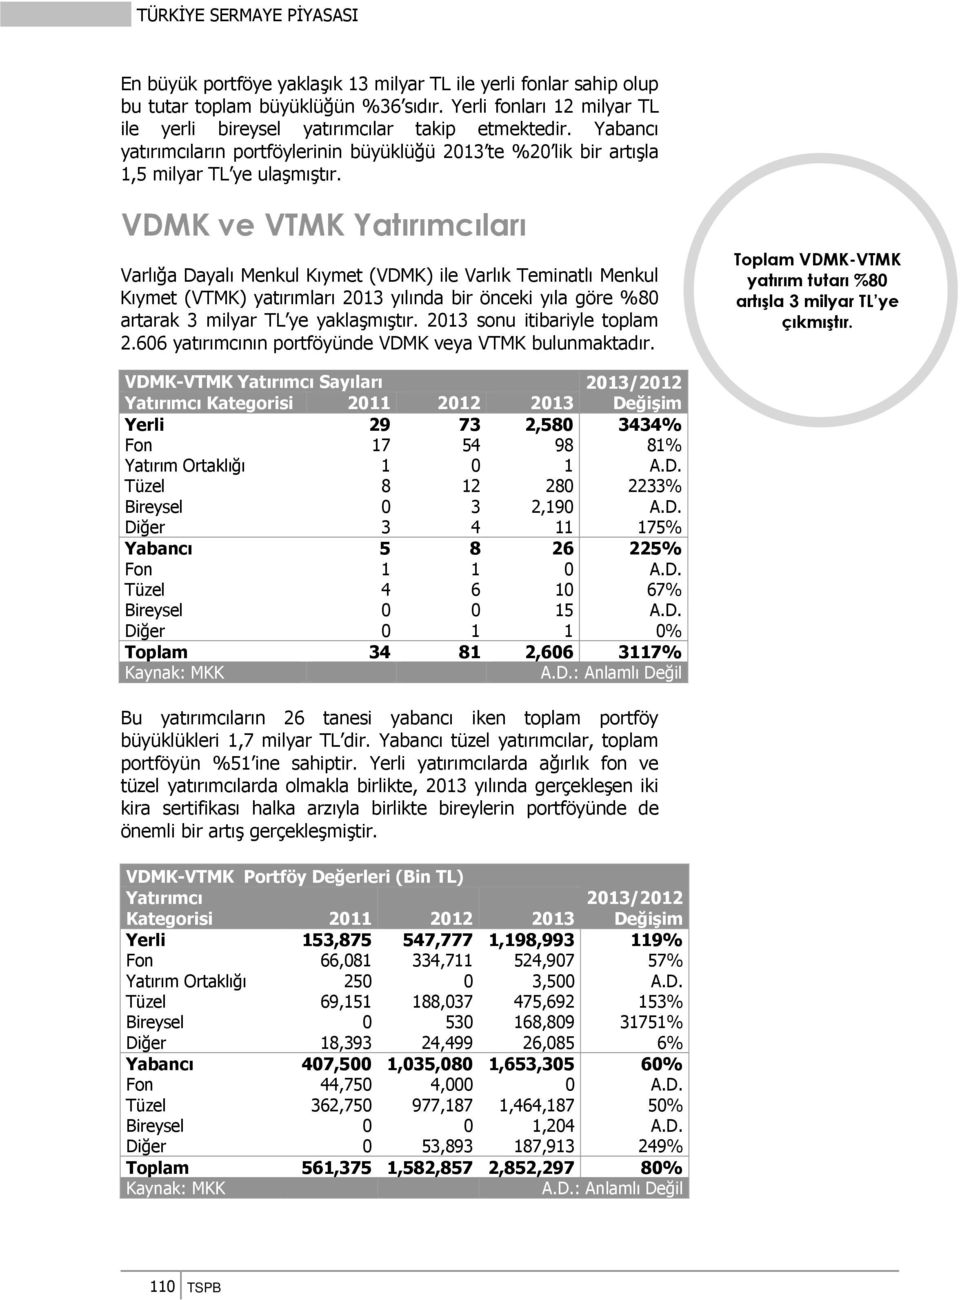 VDMK ve VTMK ları Varlığa Dayalı Menkul Kıymet (VDMK) ile Varlık Teminatlı Menkul Kıymet (VTMK) yatırımları 2013 yılında bir önceki yıla göre %80 artarak 3 milyar TL ye yaklaşmıştır.